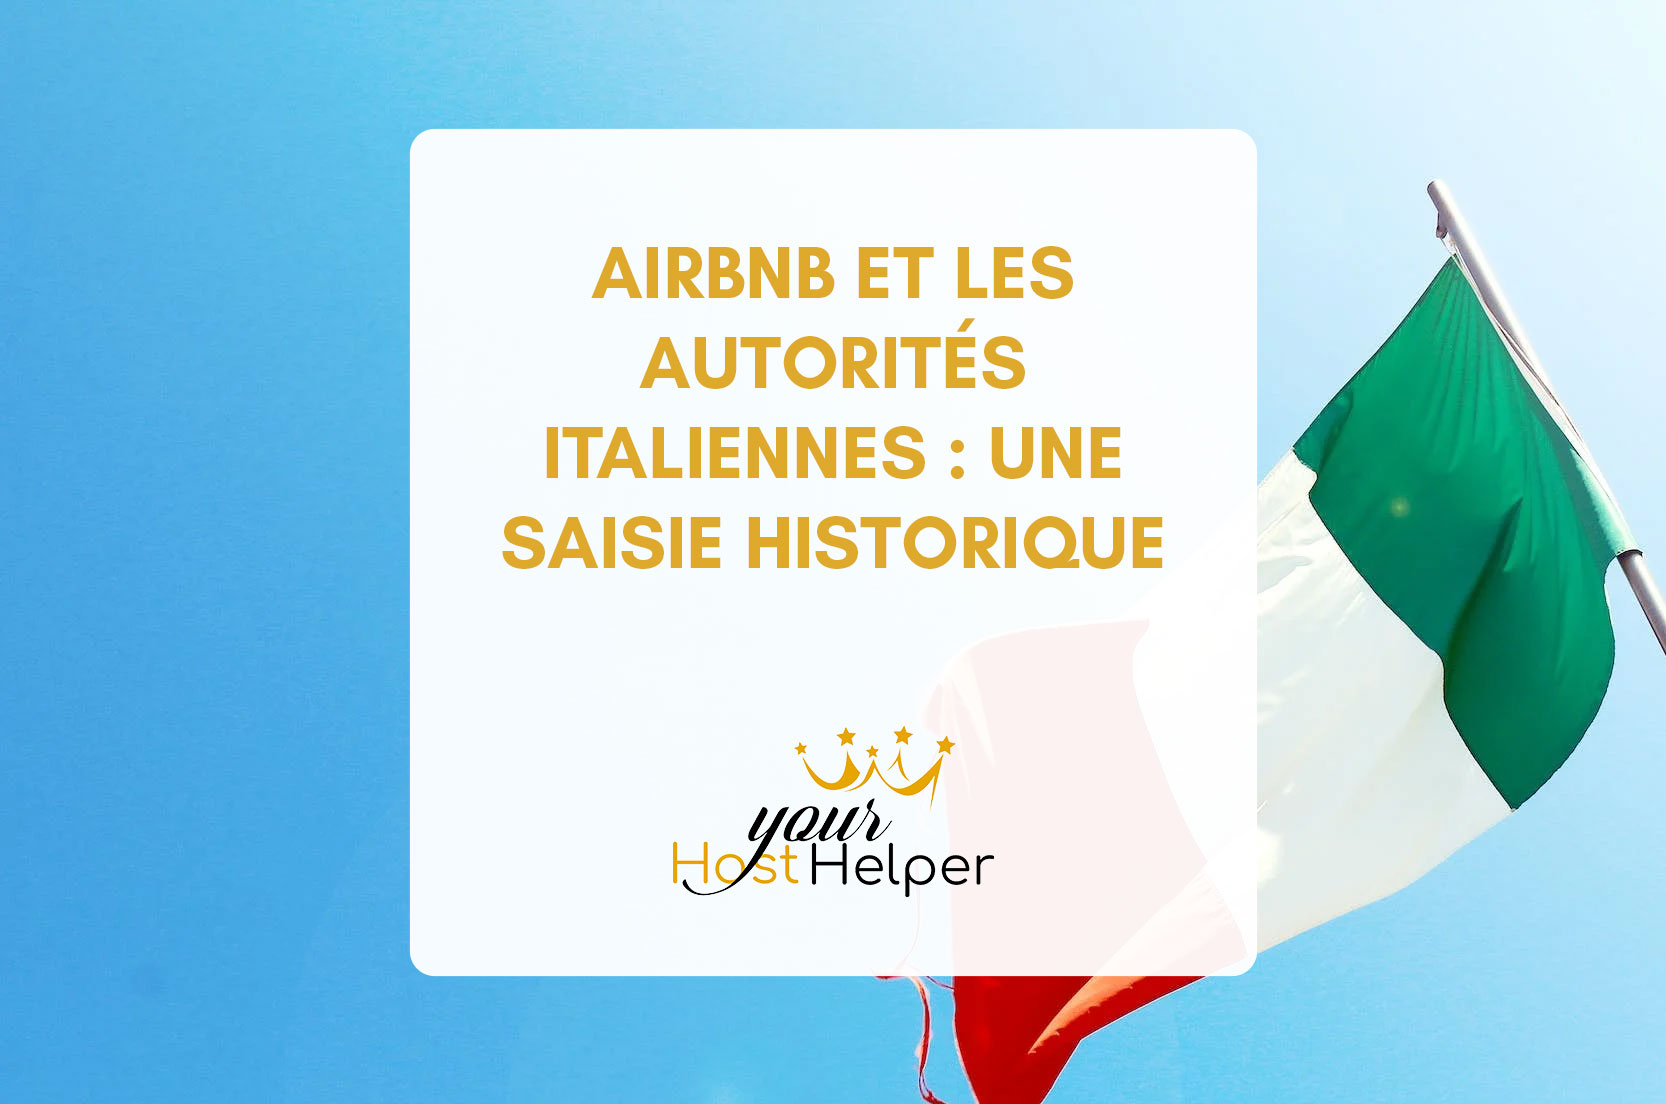 You are currently viewing Airbnb et les autorités italiennes : une saisie historique